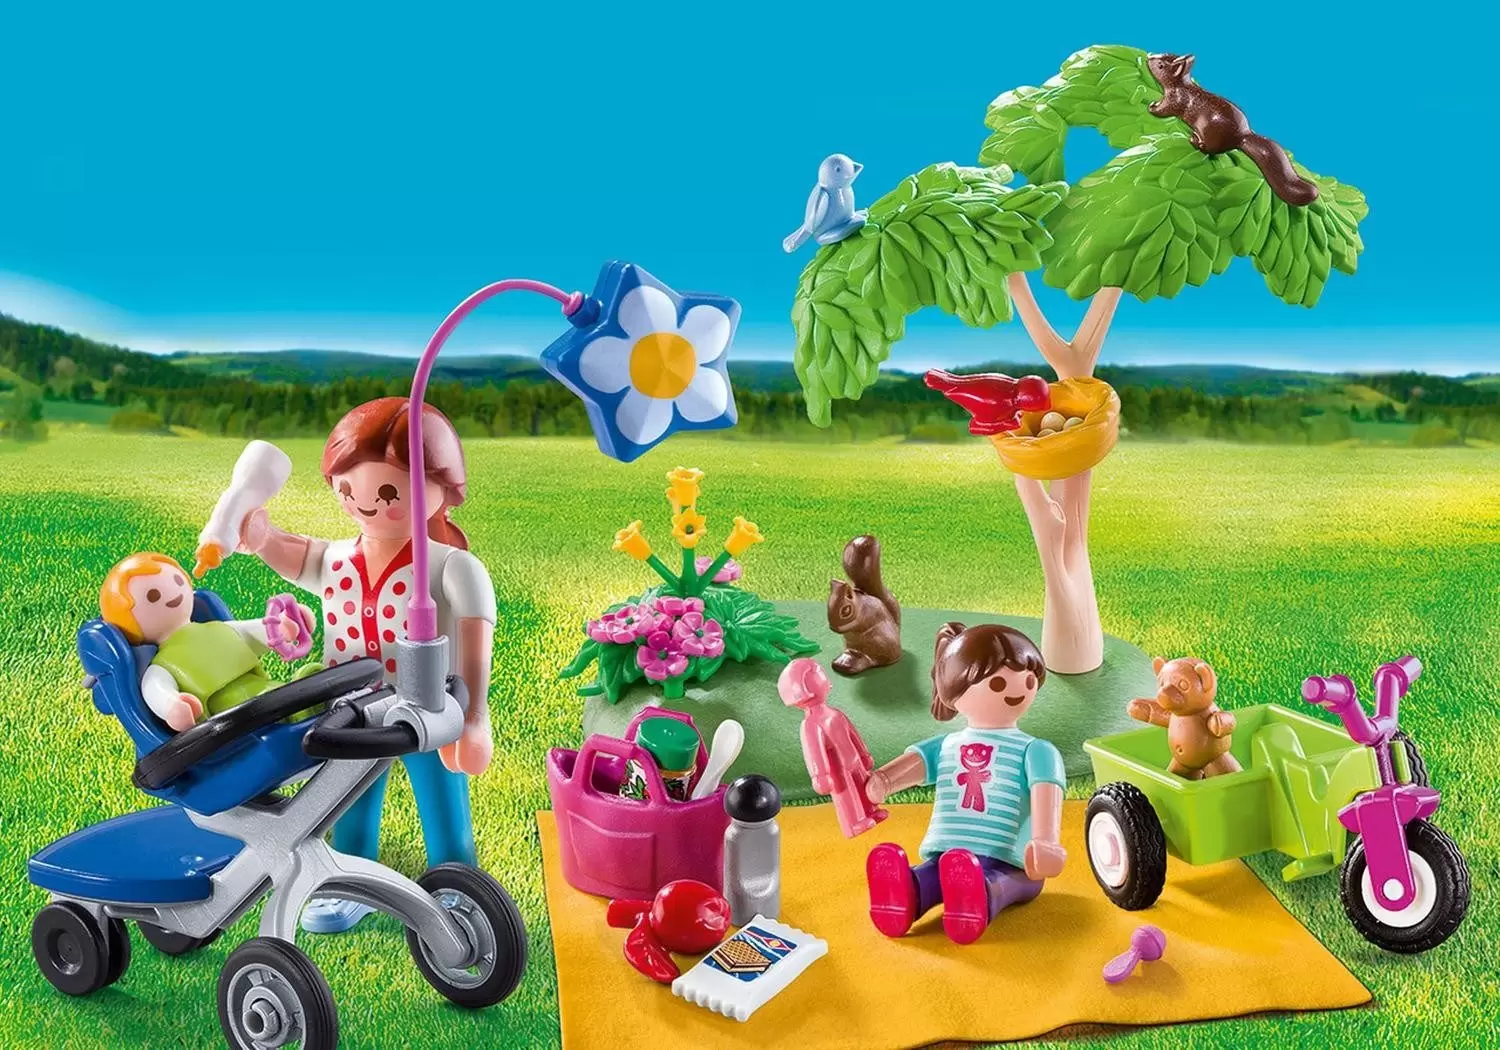 Playmobil en vacances - Valisette Pique-nique en Famille